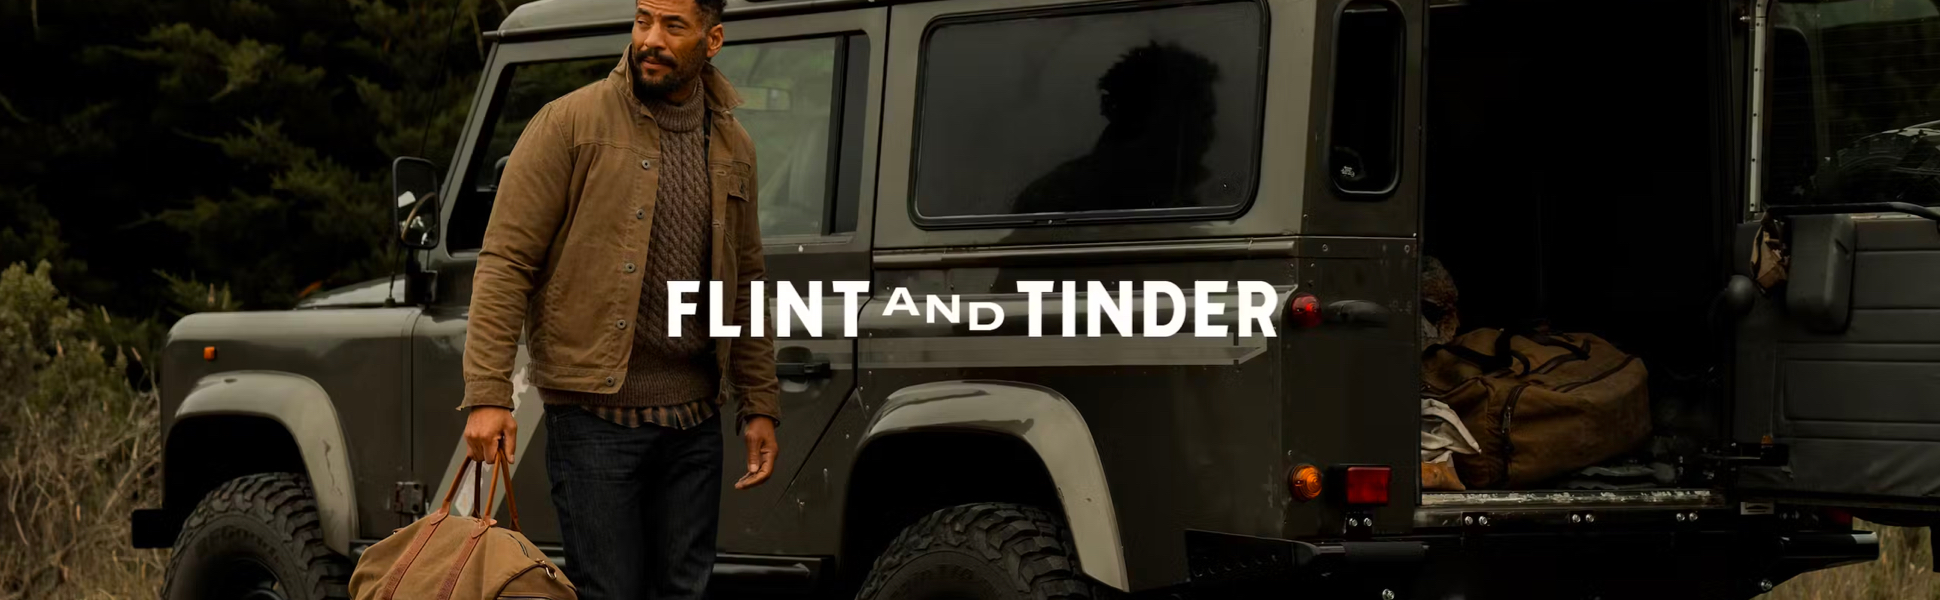 Flint Tinder Home - Image